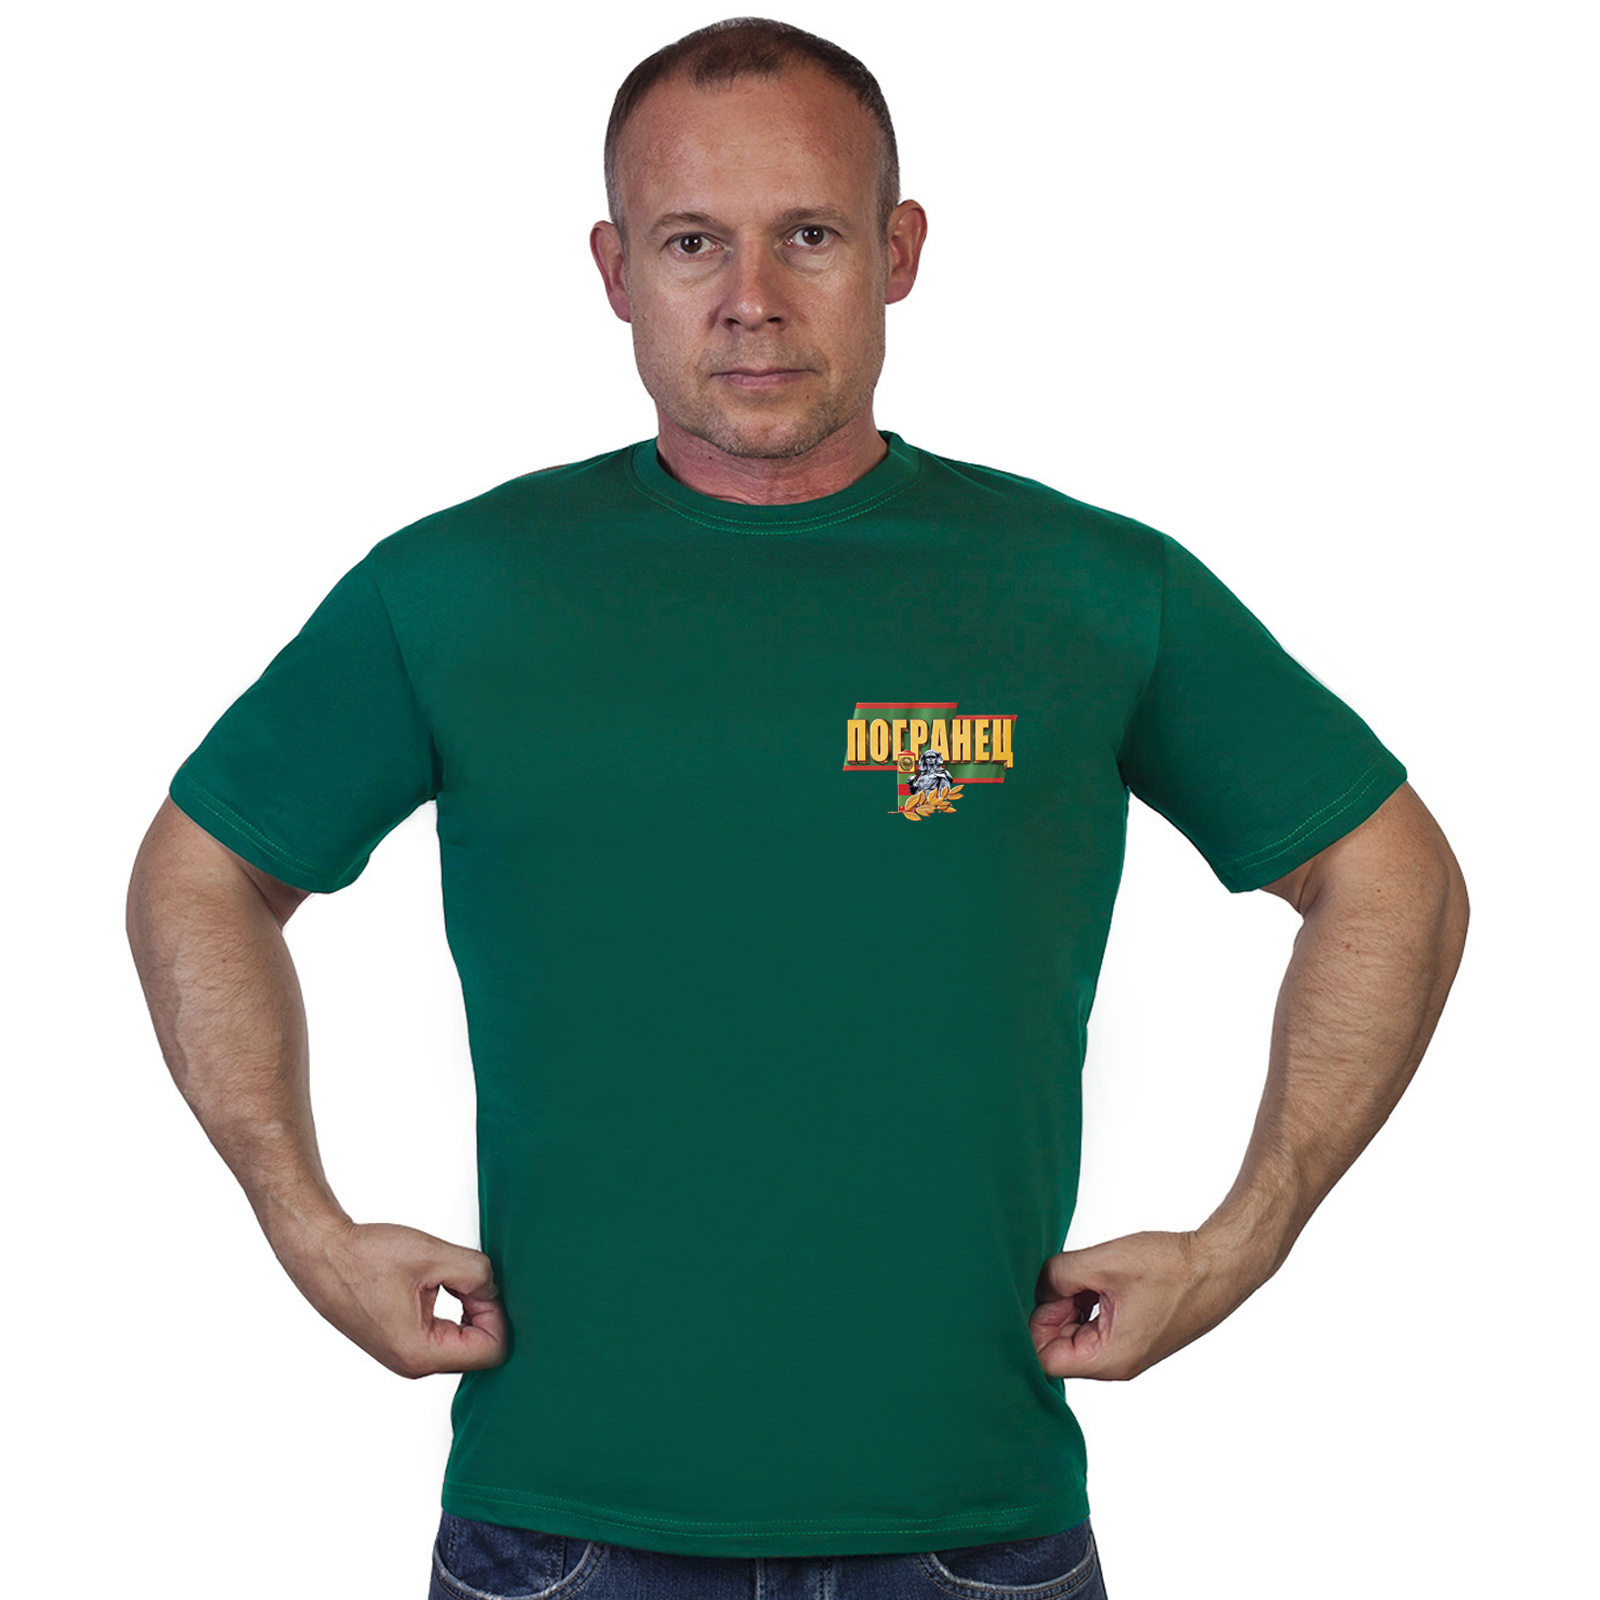 Зелёная футболка с термотрансферной надписью "Погранец" 